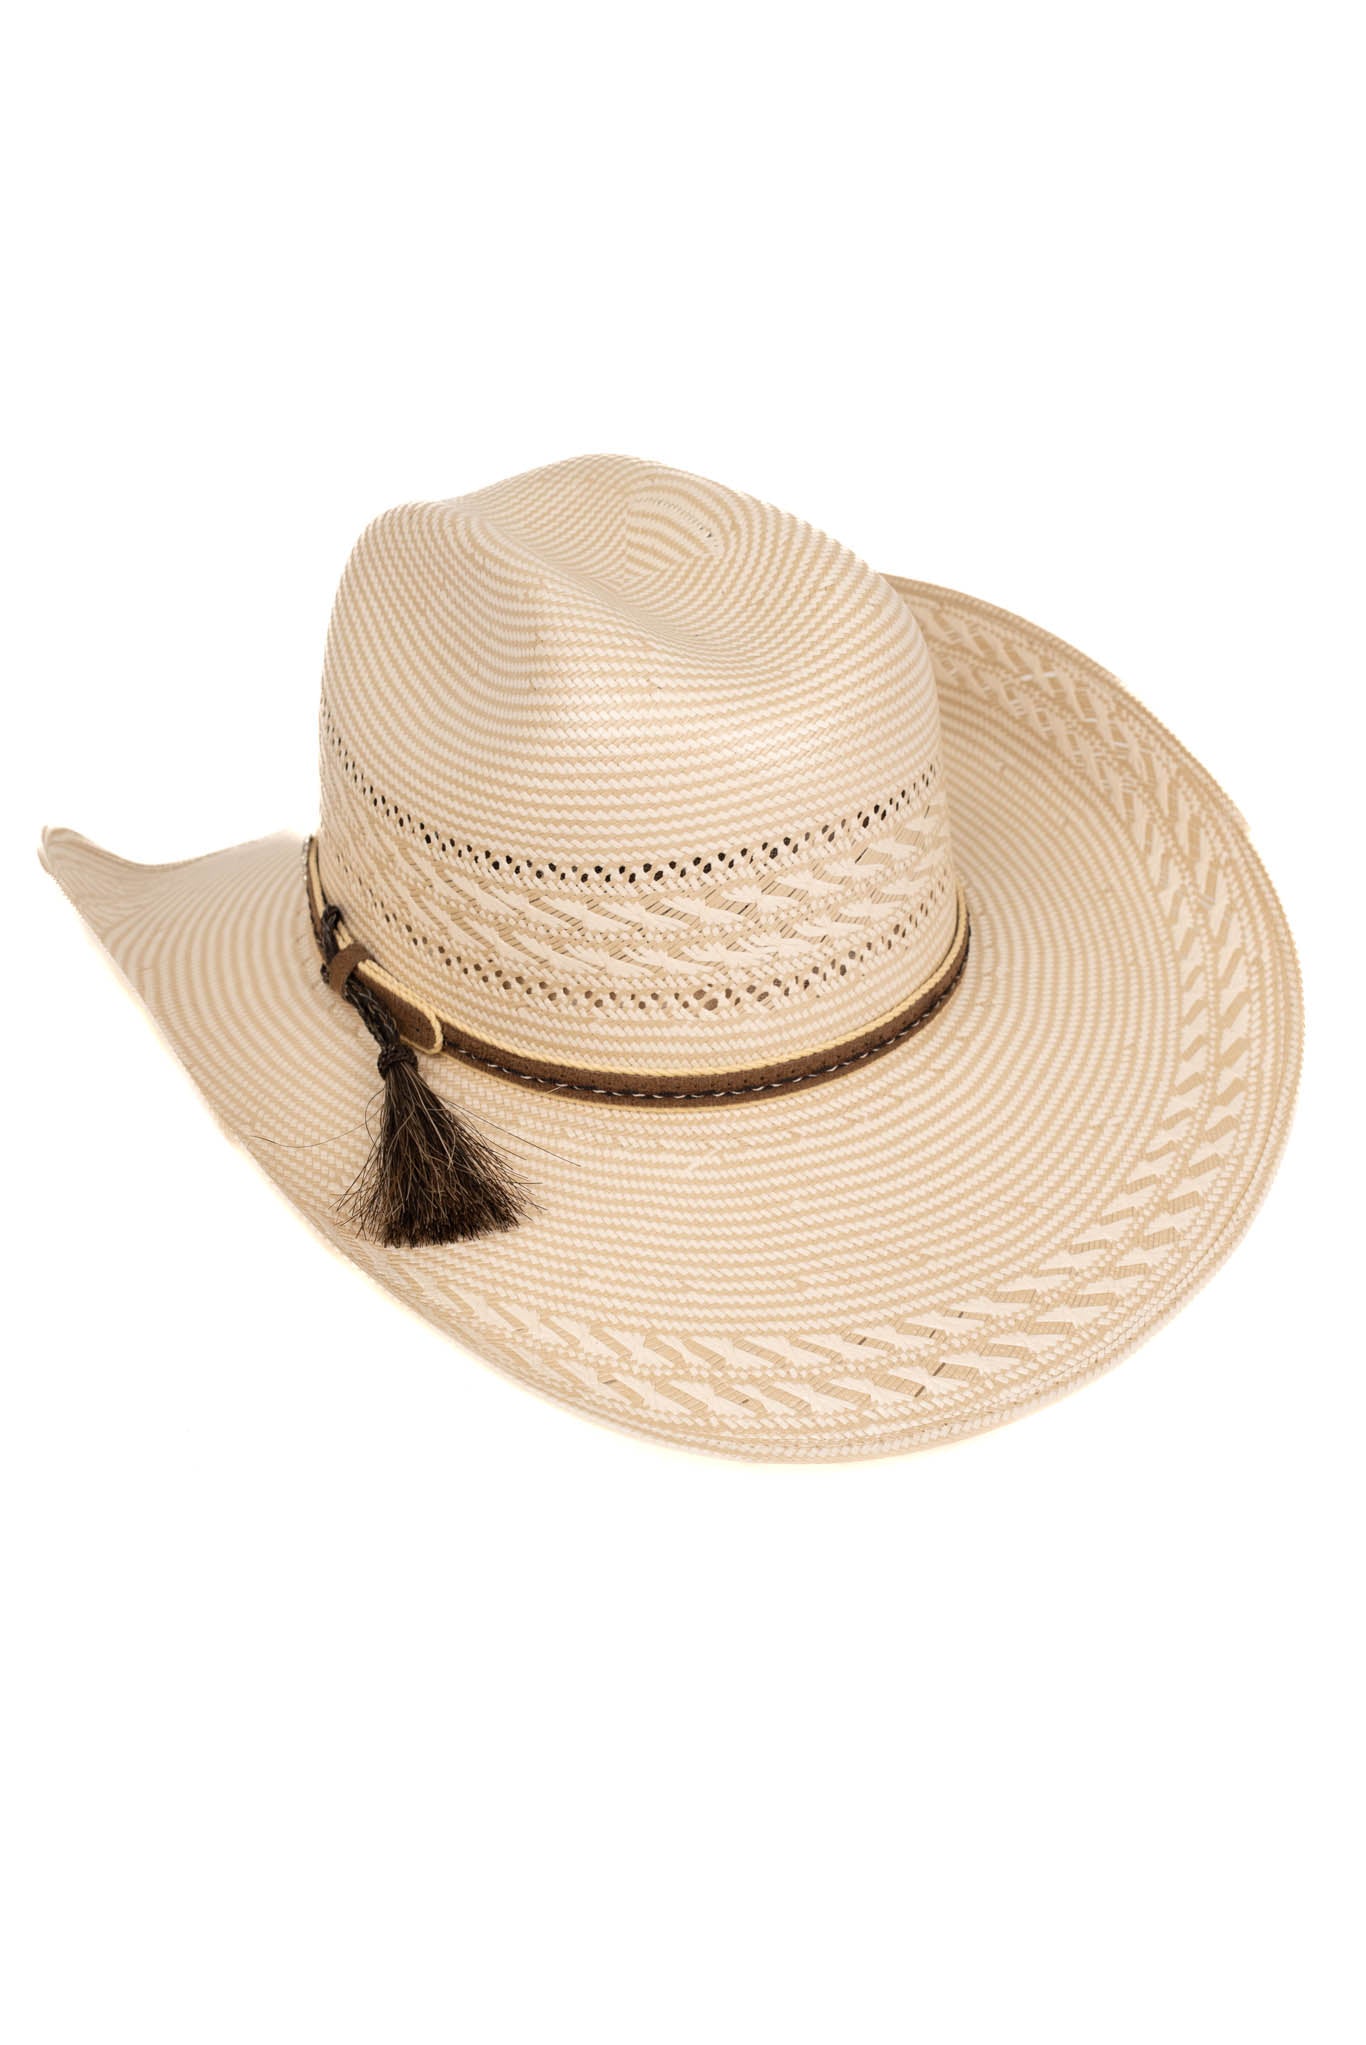 John Tassel 100X Limited Edition Straw Hat